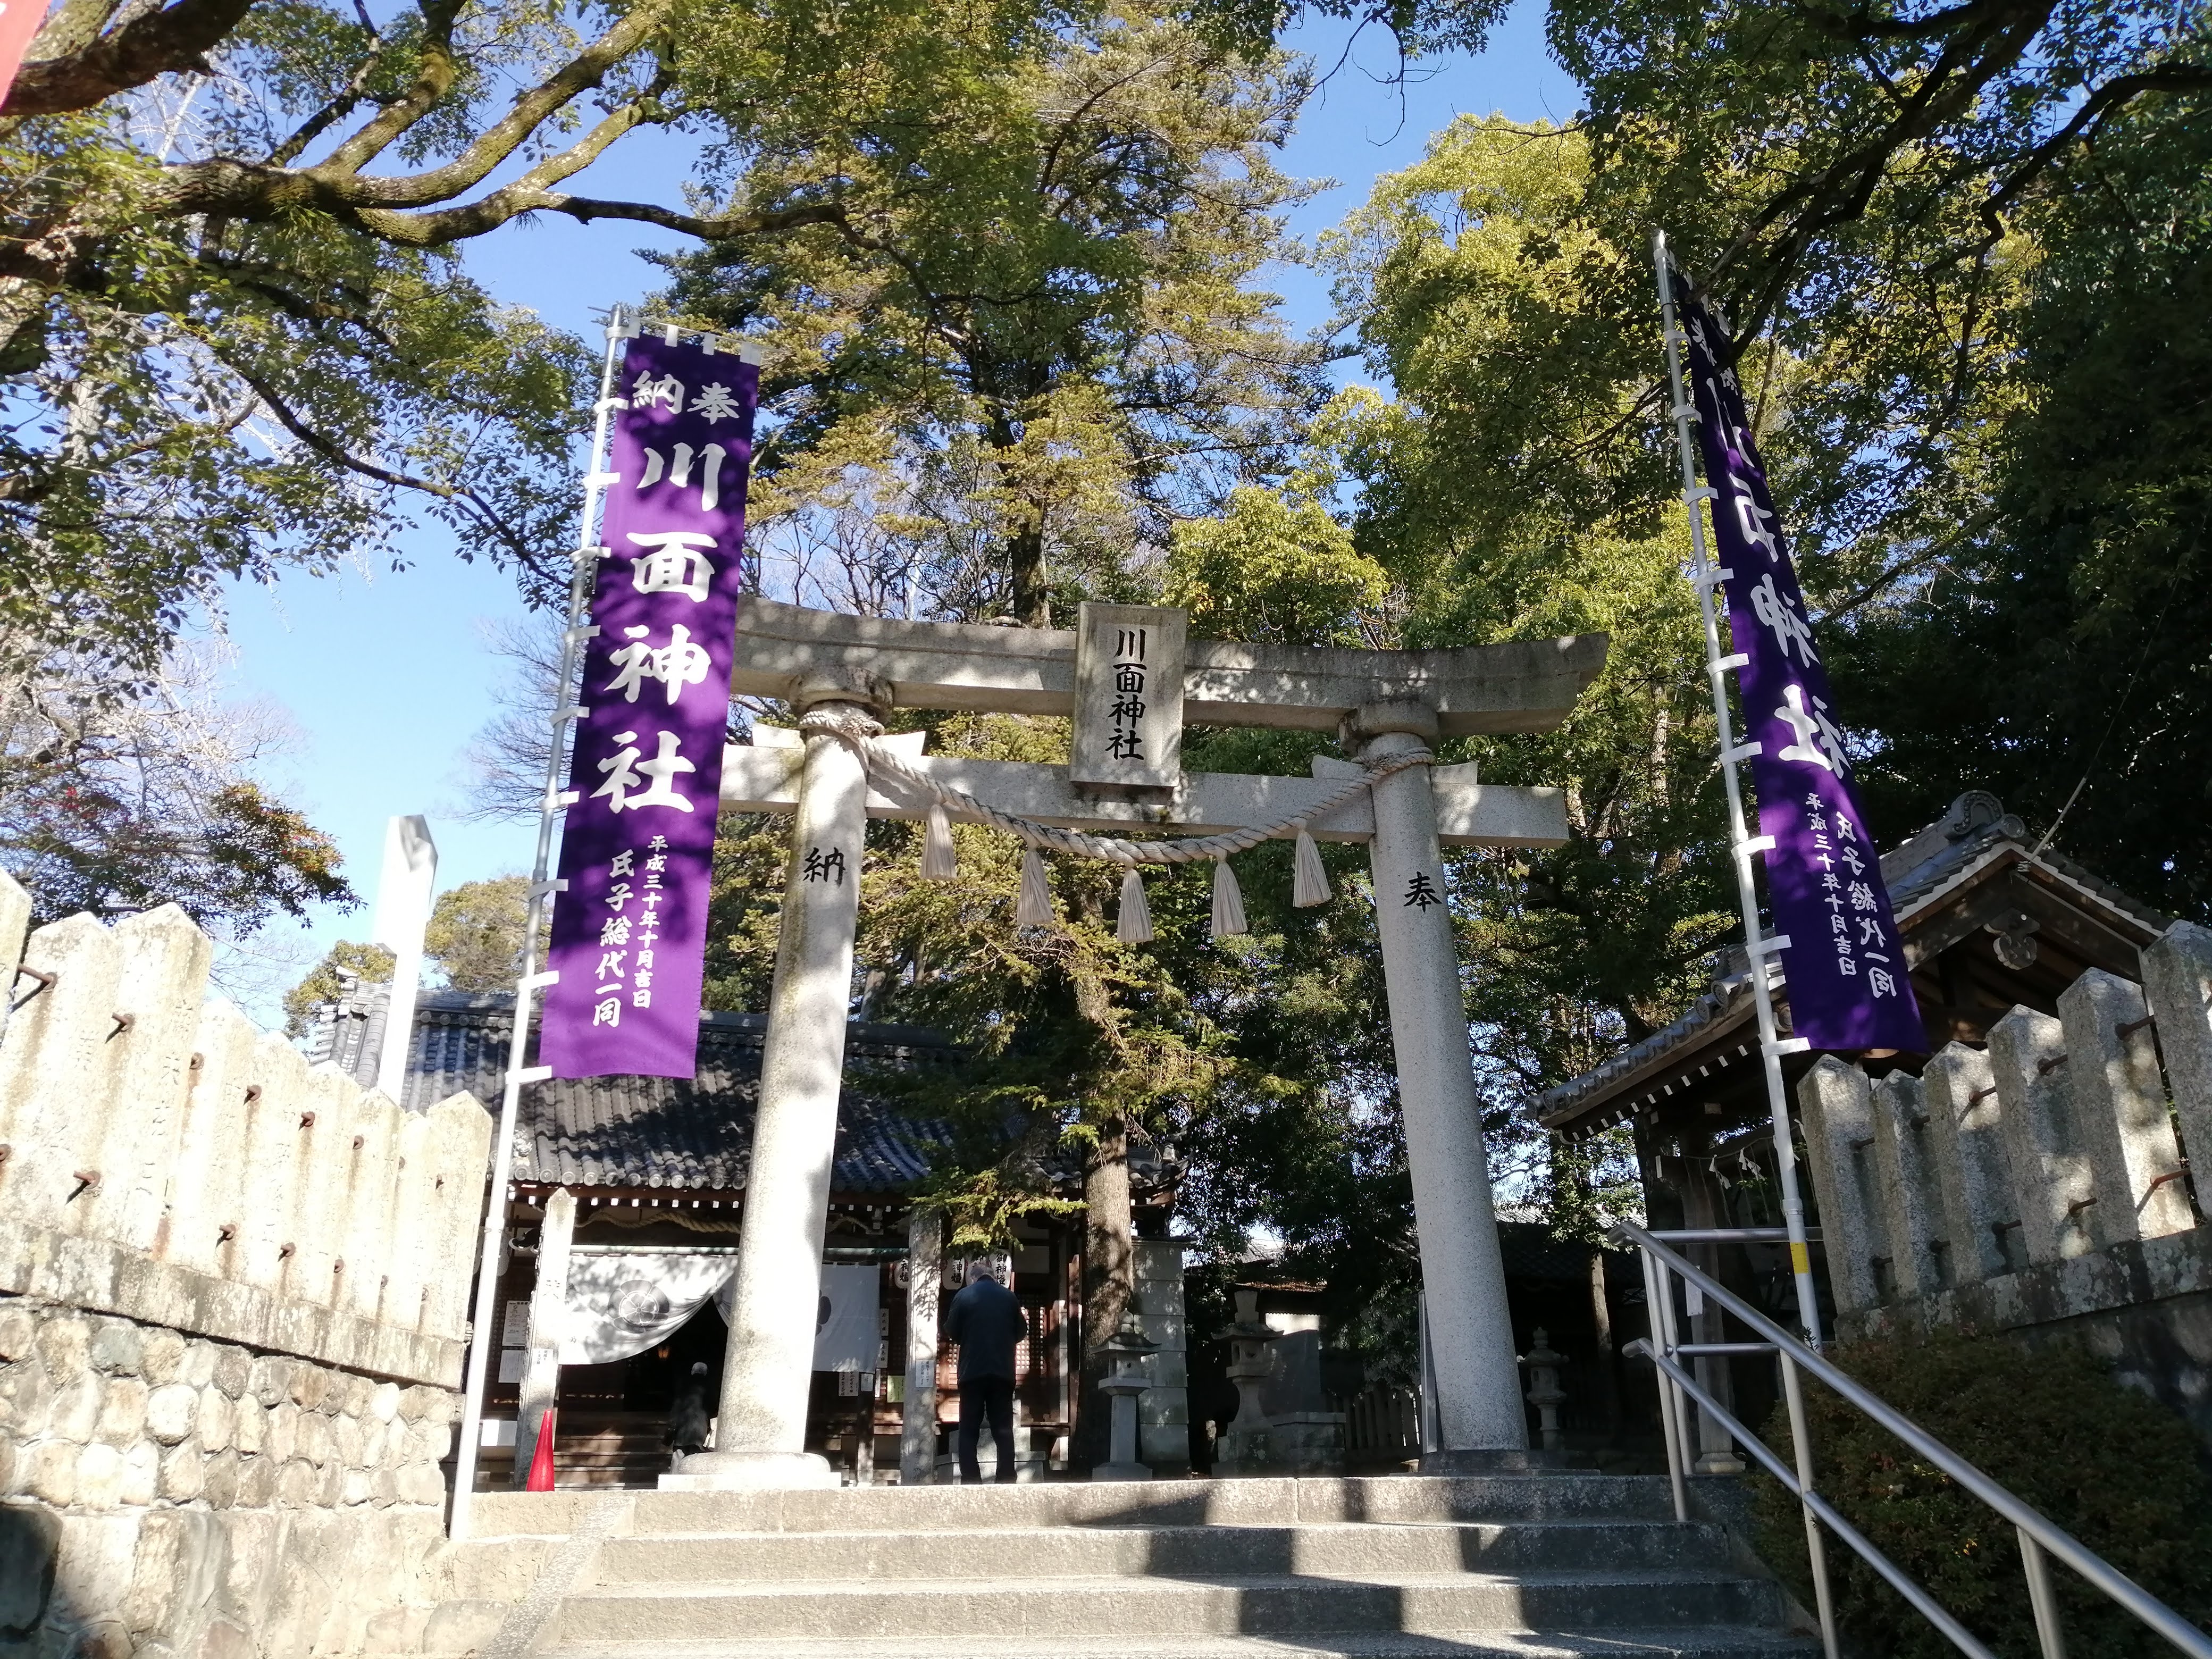 私のパワースポット 宝塚の川面神社に初詣に行ったら いつもと少し違っていました